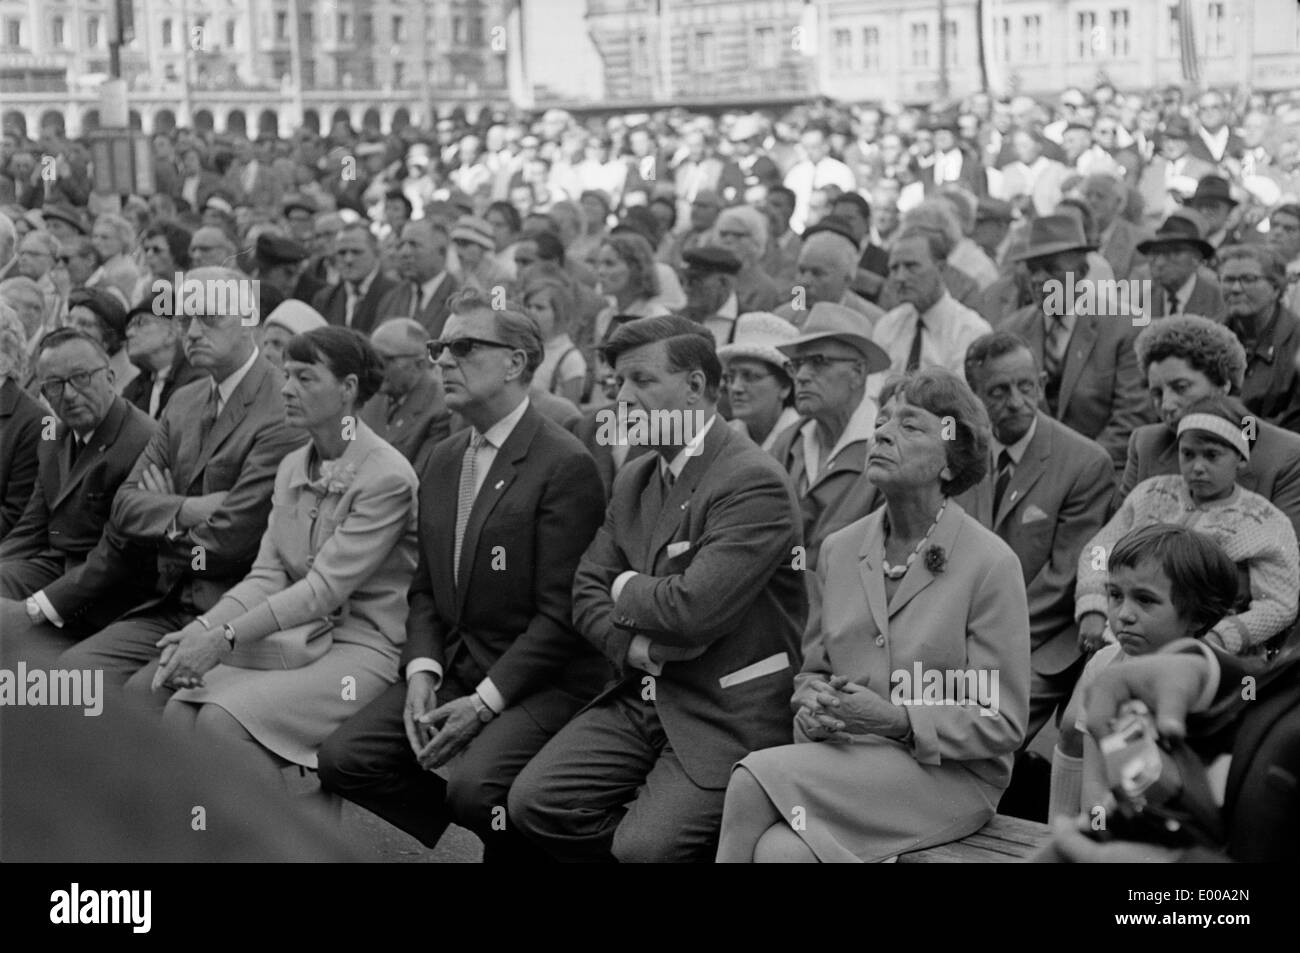 Helmut Schmidt as a spectator Stock Photo